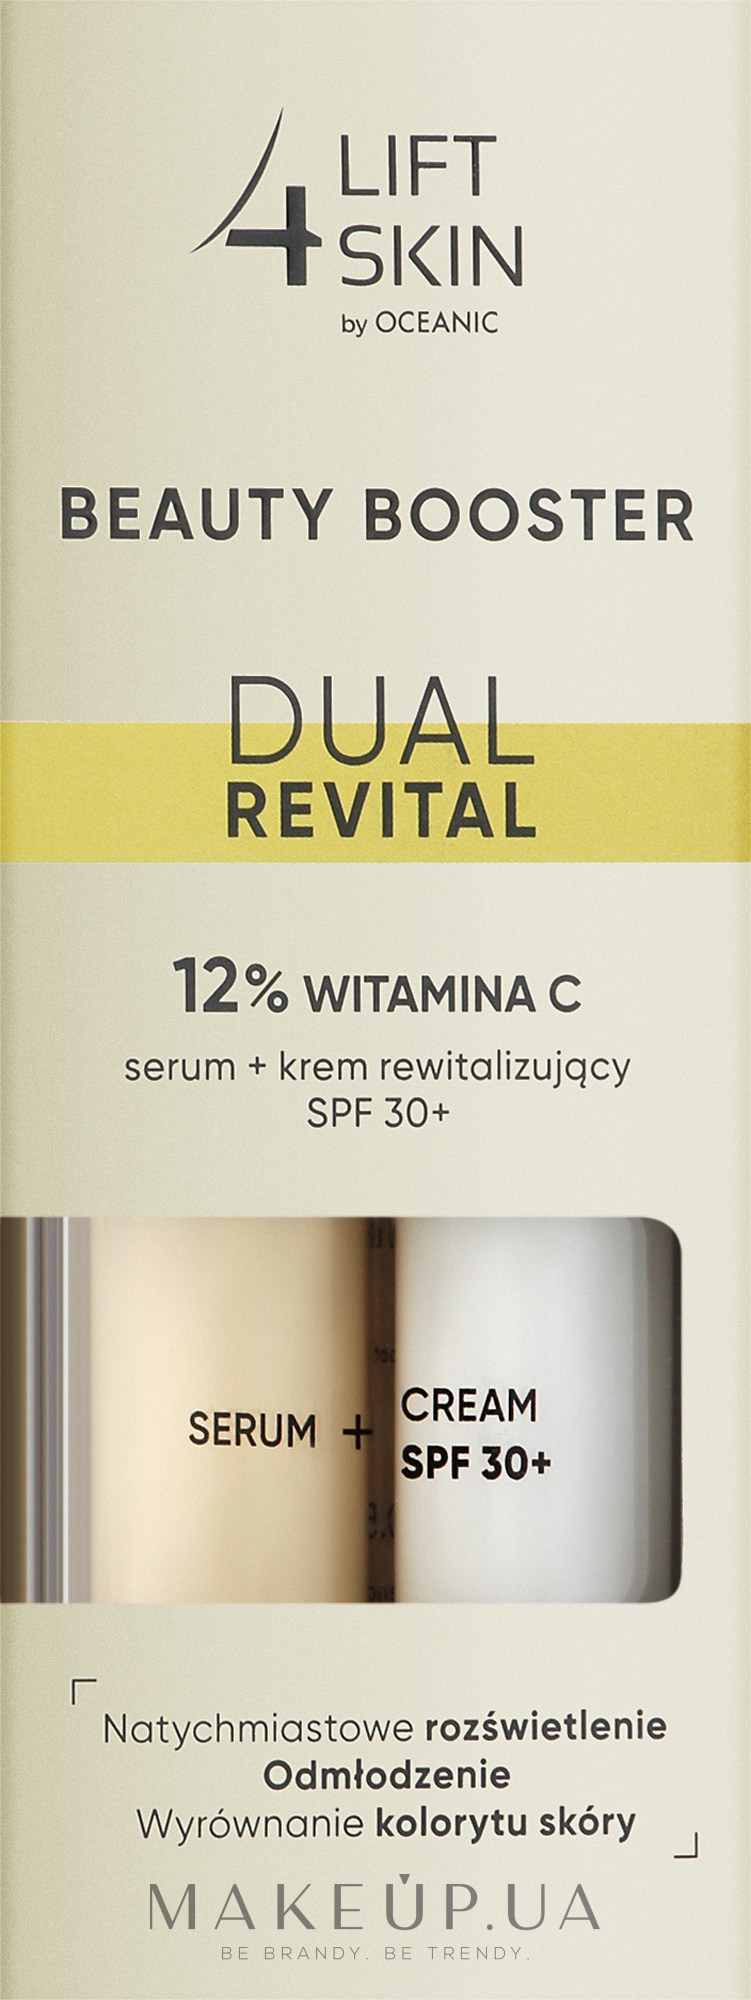 Сыворотка с витамином С + крем с SPF 30+ 2 в 1 - Lift 4 Skin Beauty Booster Dual Revital 12% Vitamin C Serum + Cream SPF30+ — фото 2x15ml